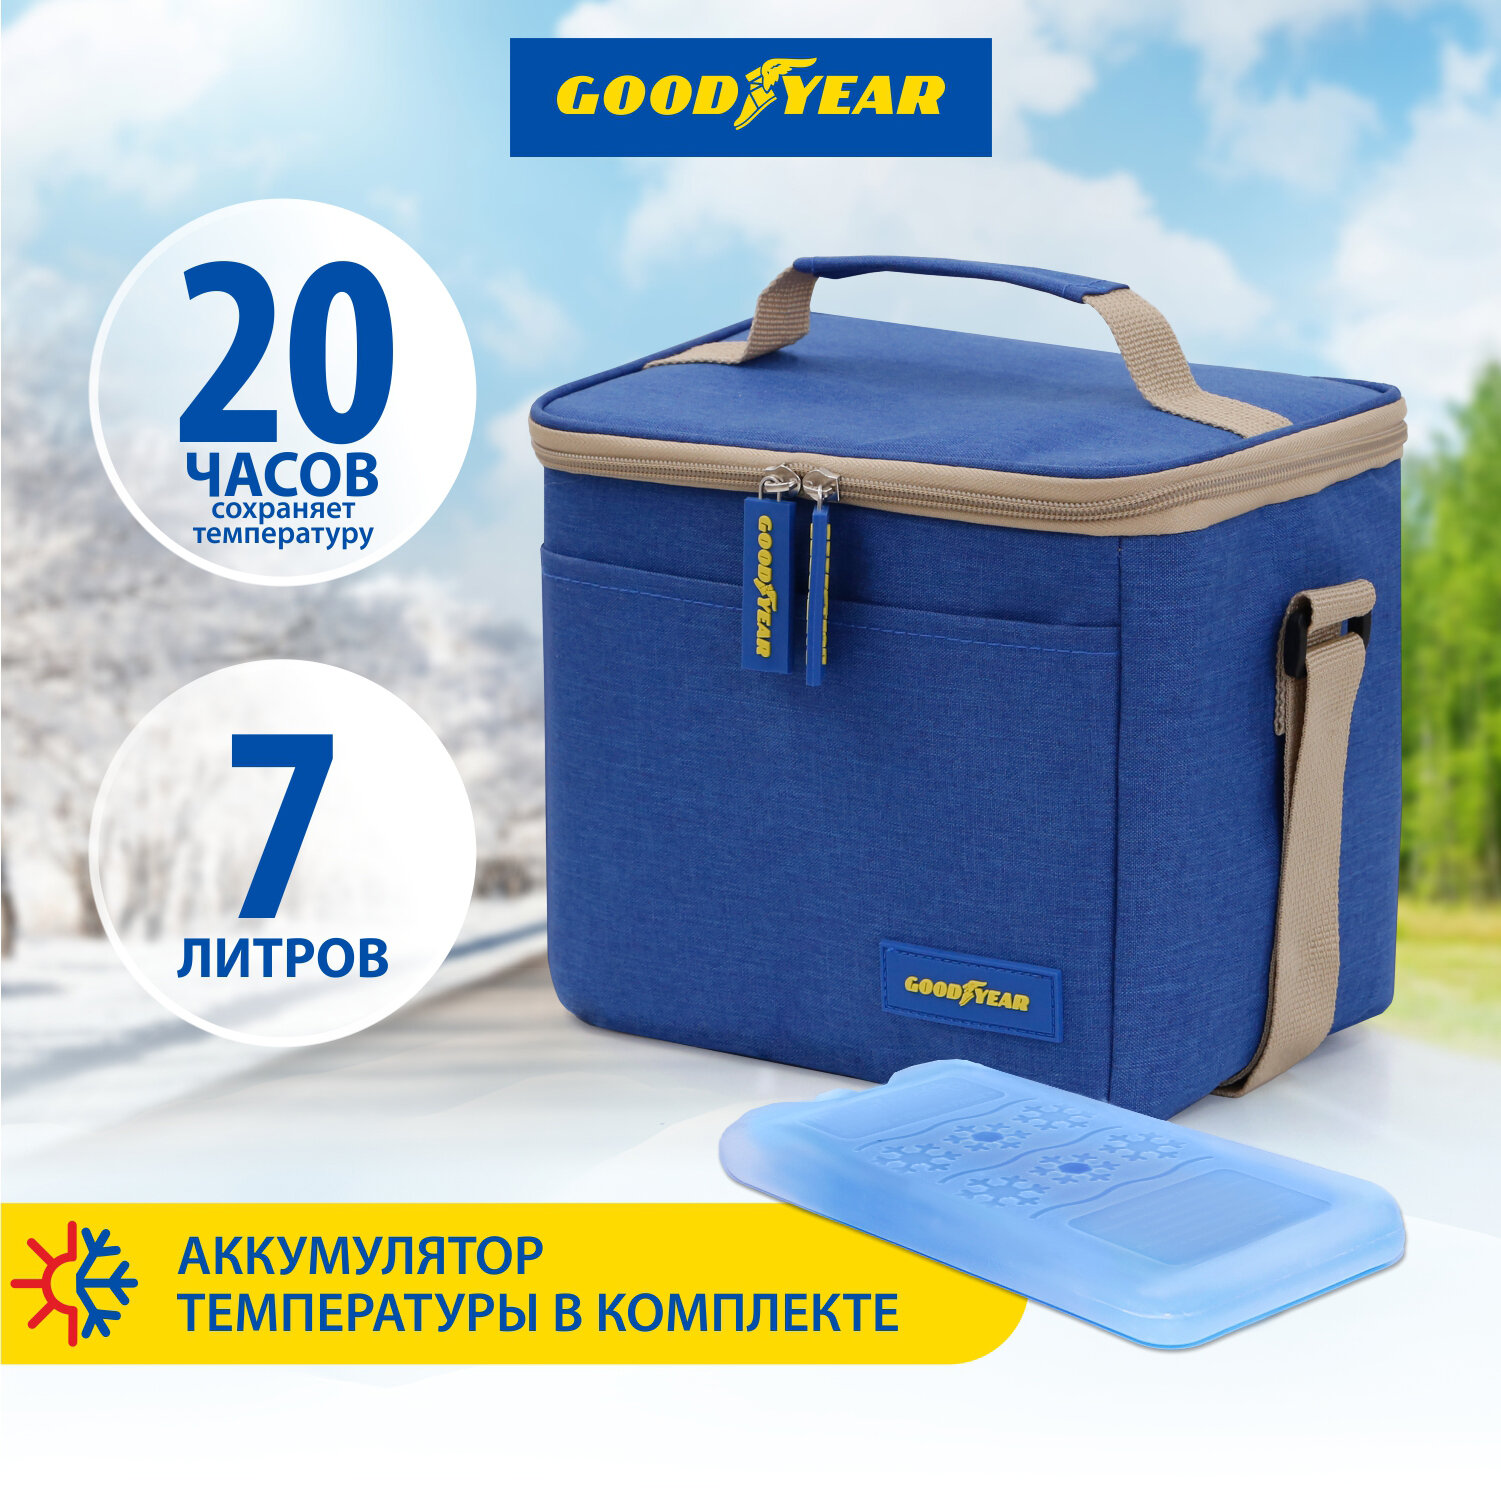 Термосумка/ сумка-холодильник/ классическая Goodyear GY-CB-7L /7 литров/с аккумулятором холода